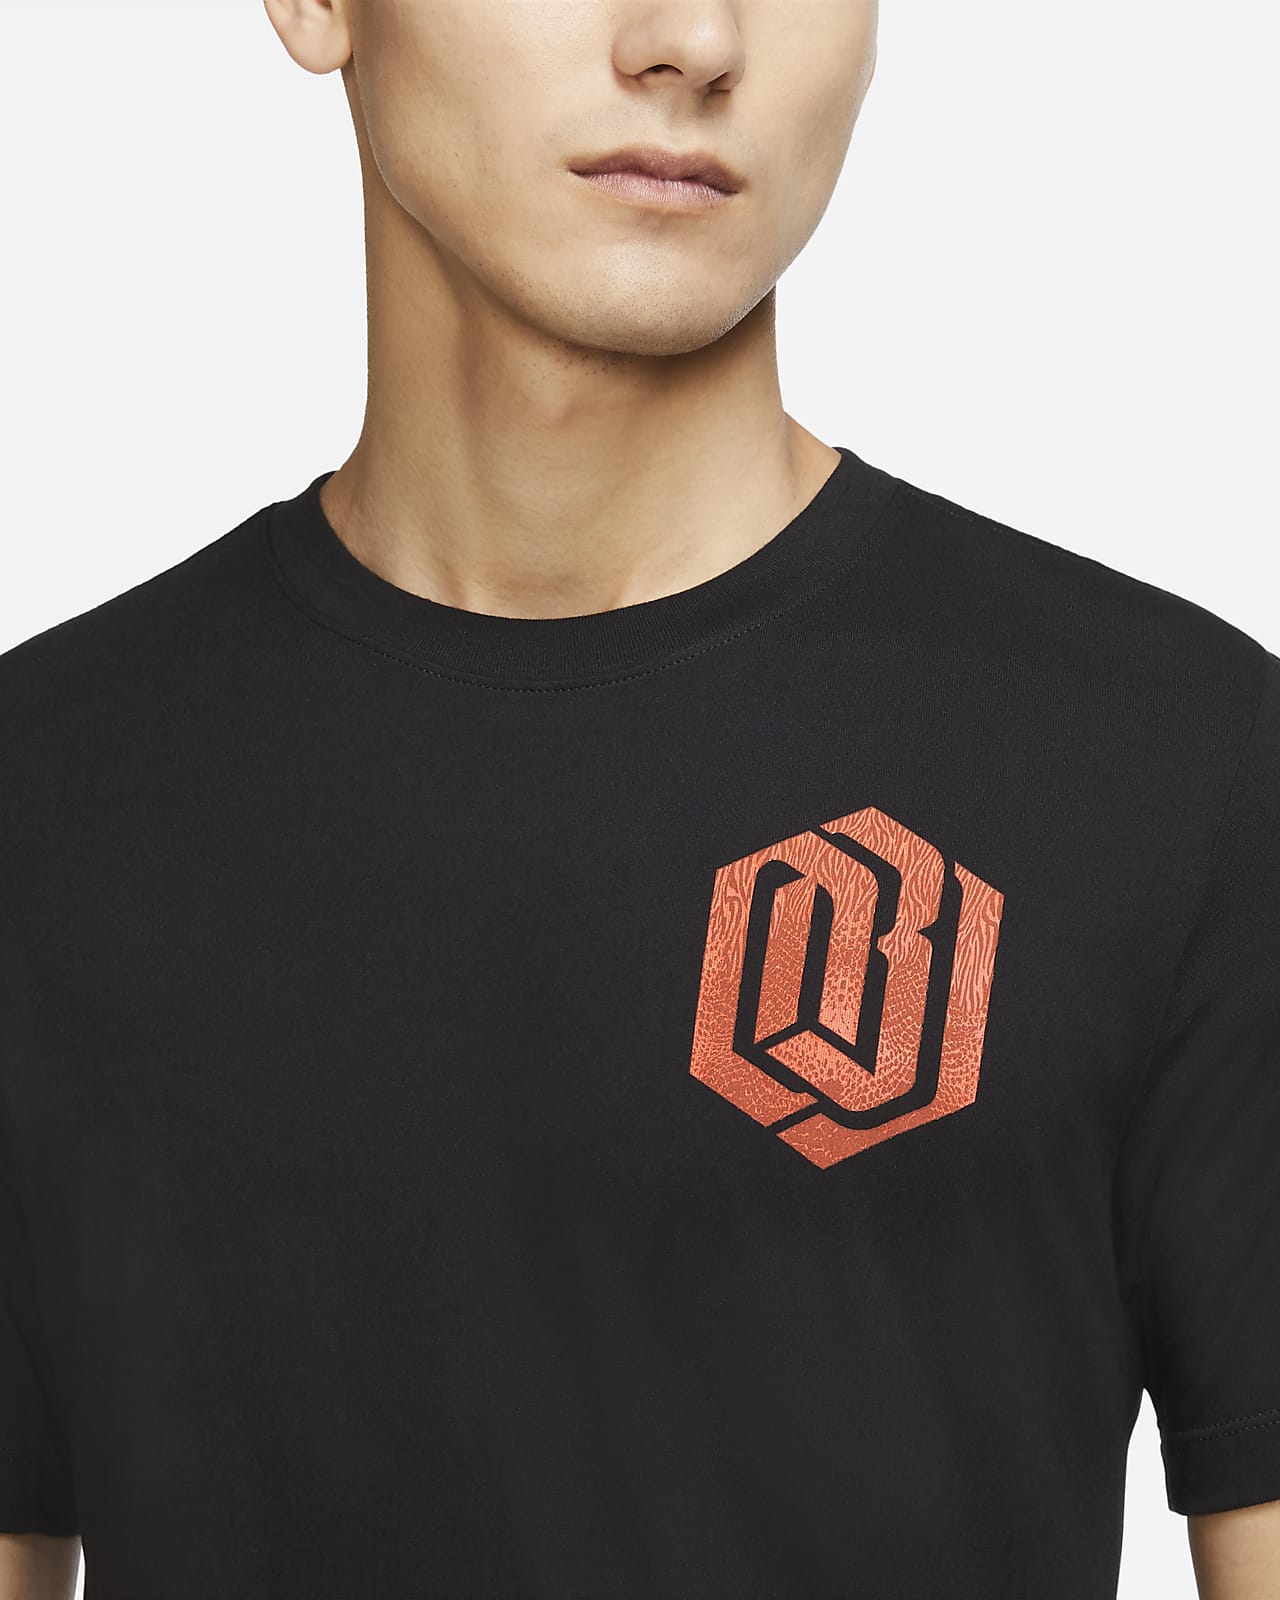 Nike Dri-FIT OBJ Men's T-Shirt. Nike.com